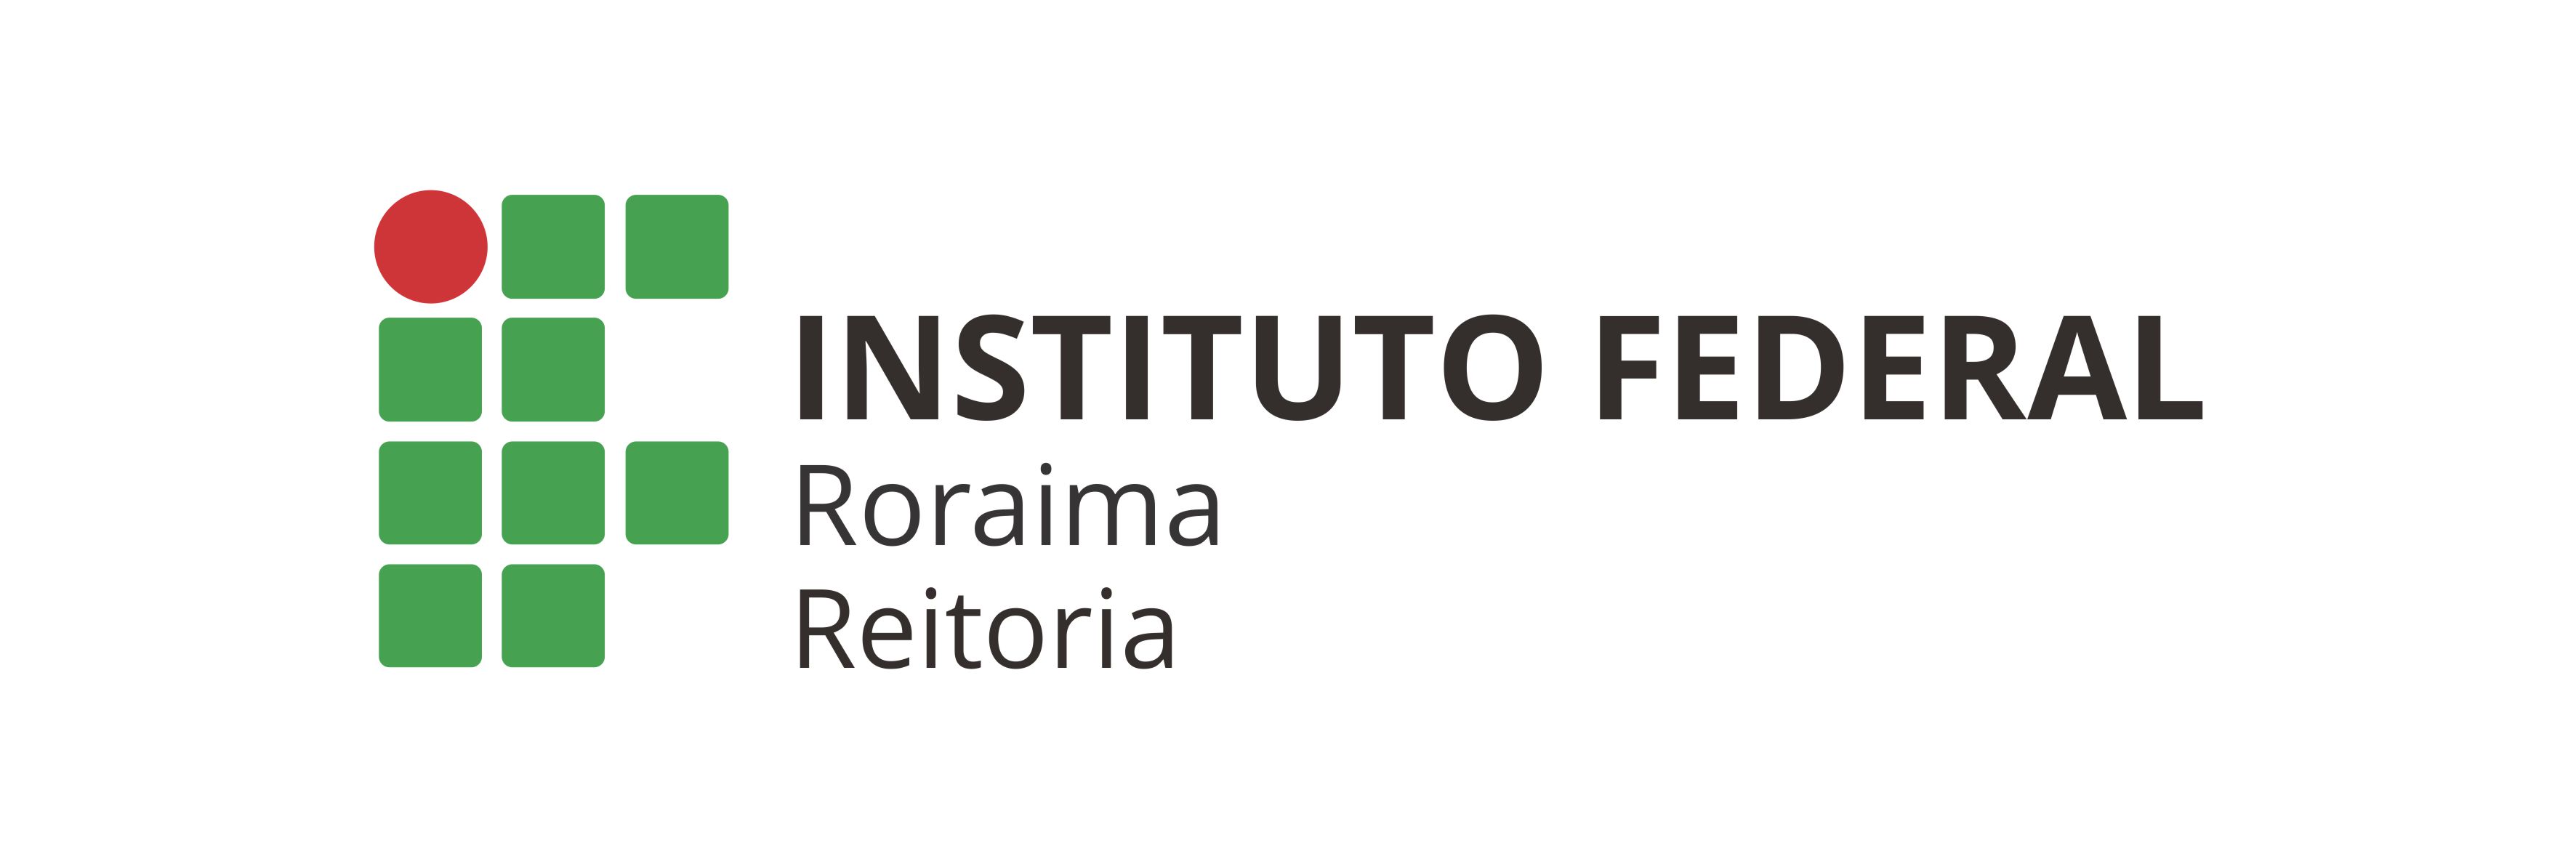 Logotipo IFRR Reitoria – Aplicação horizontal